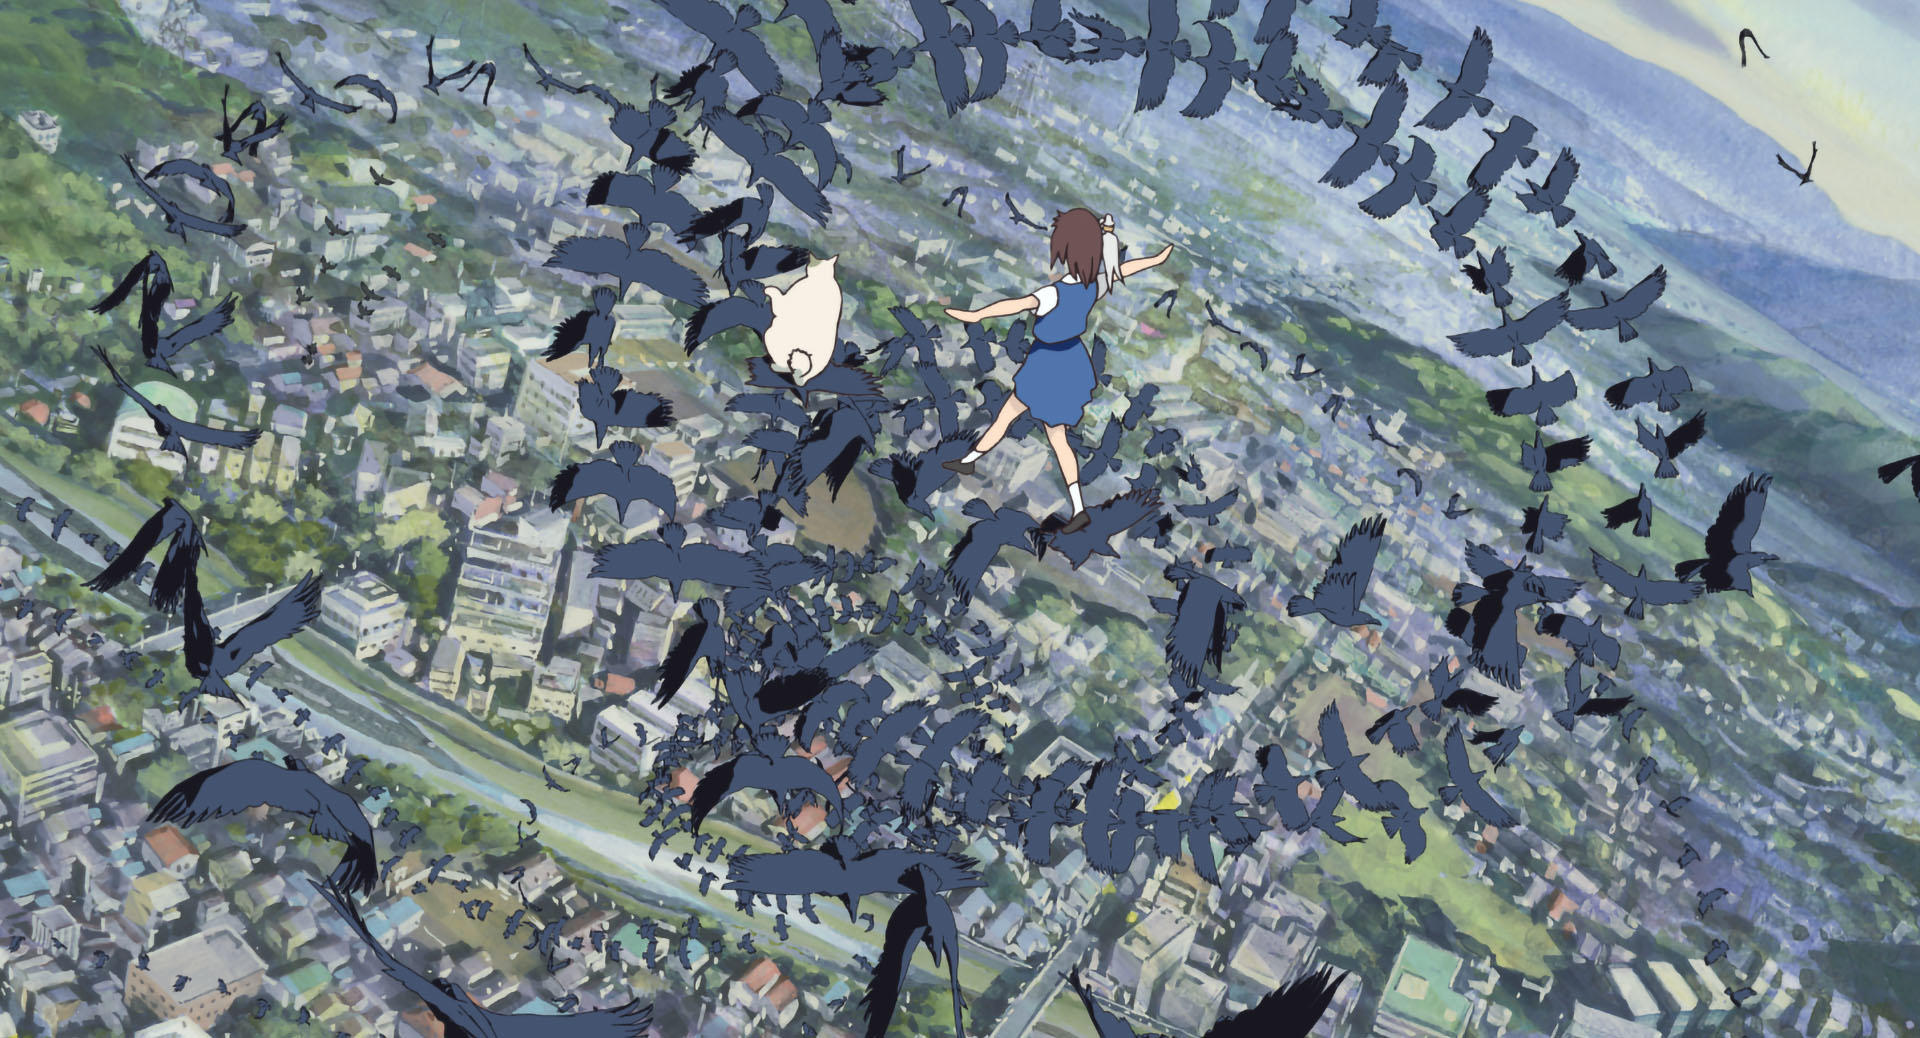 Ghibli опубликовала 300 обоев из своих мультфильмов